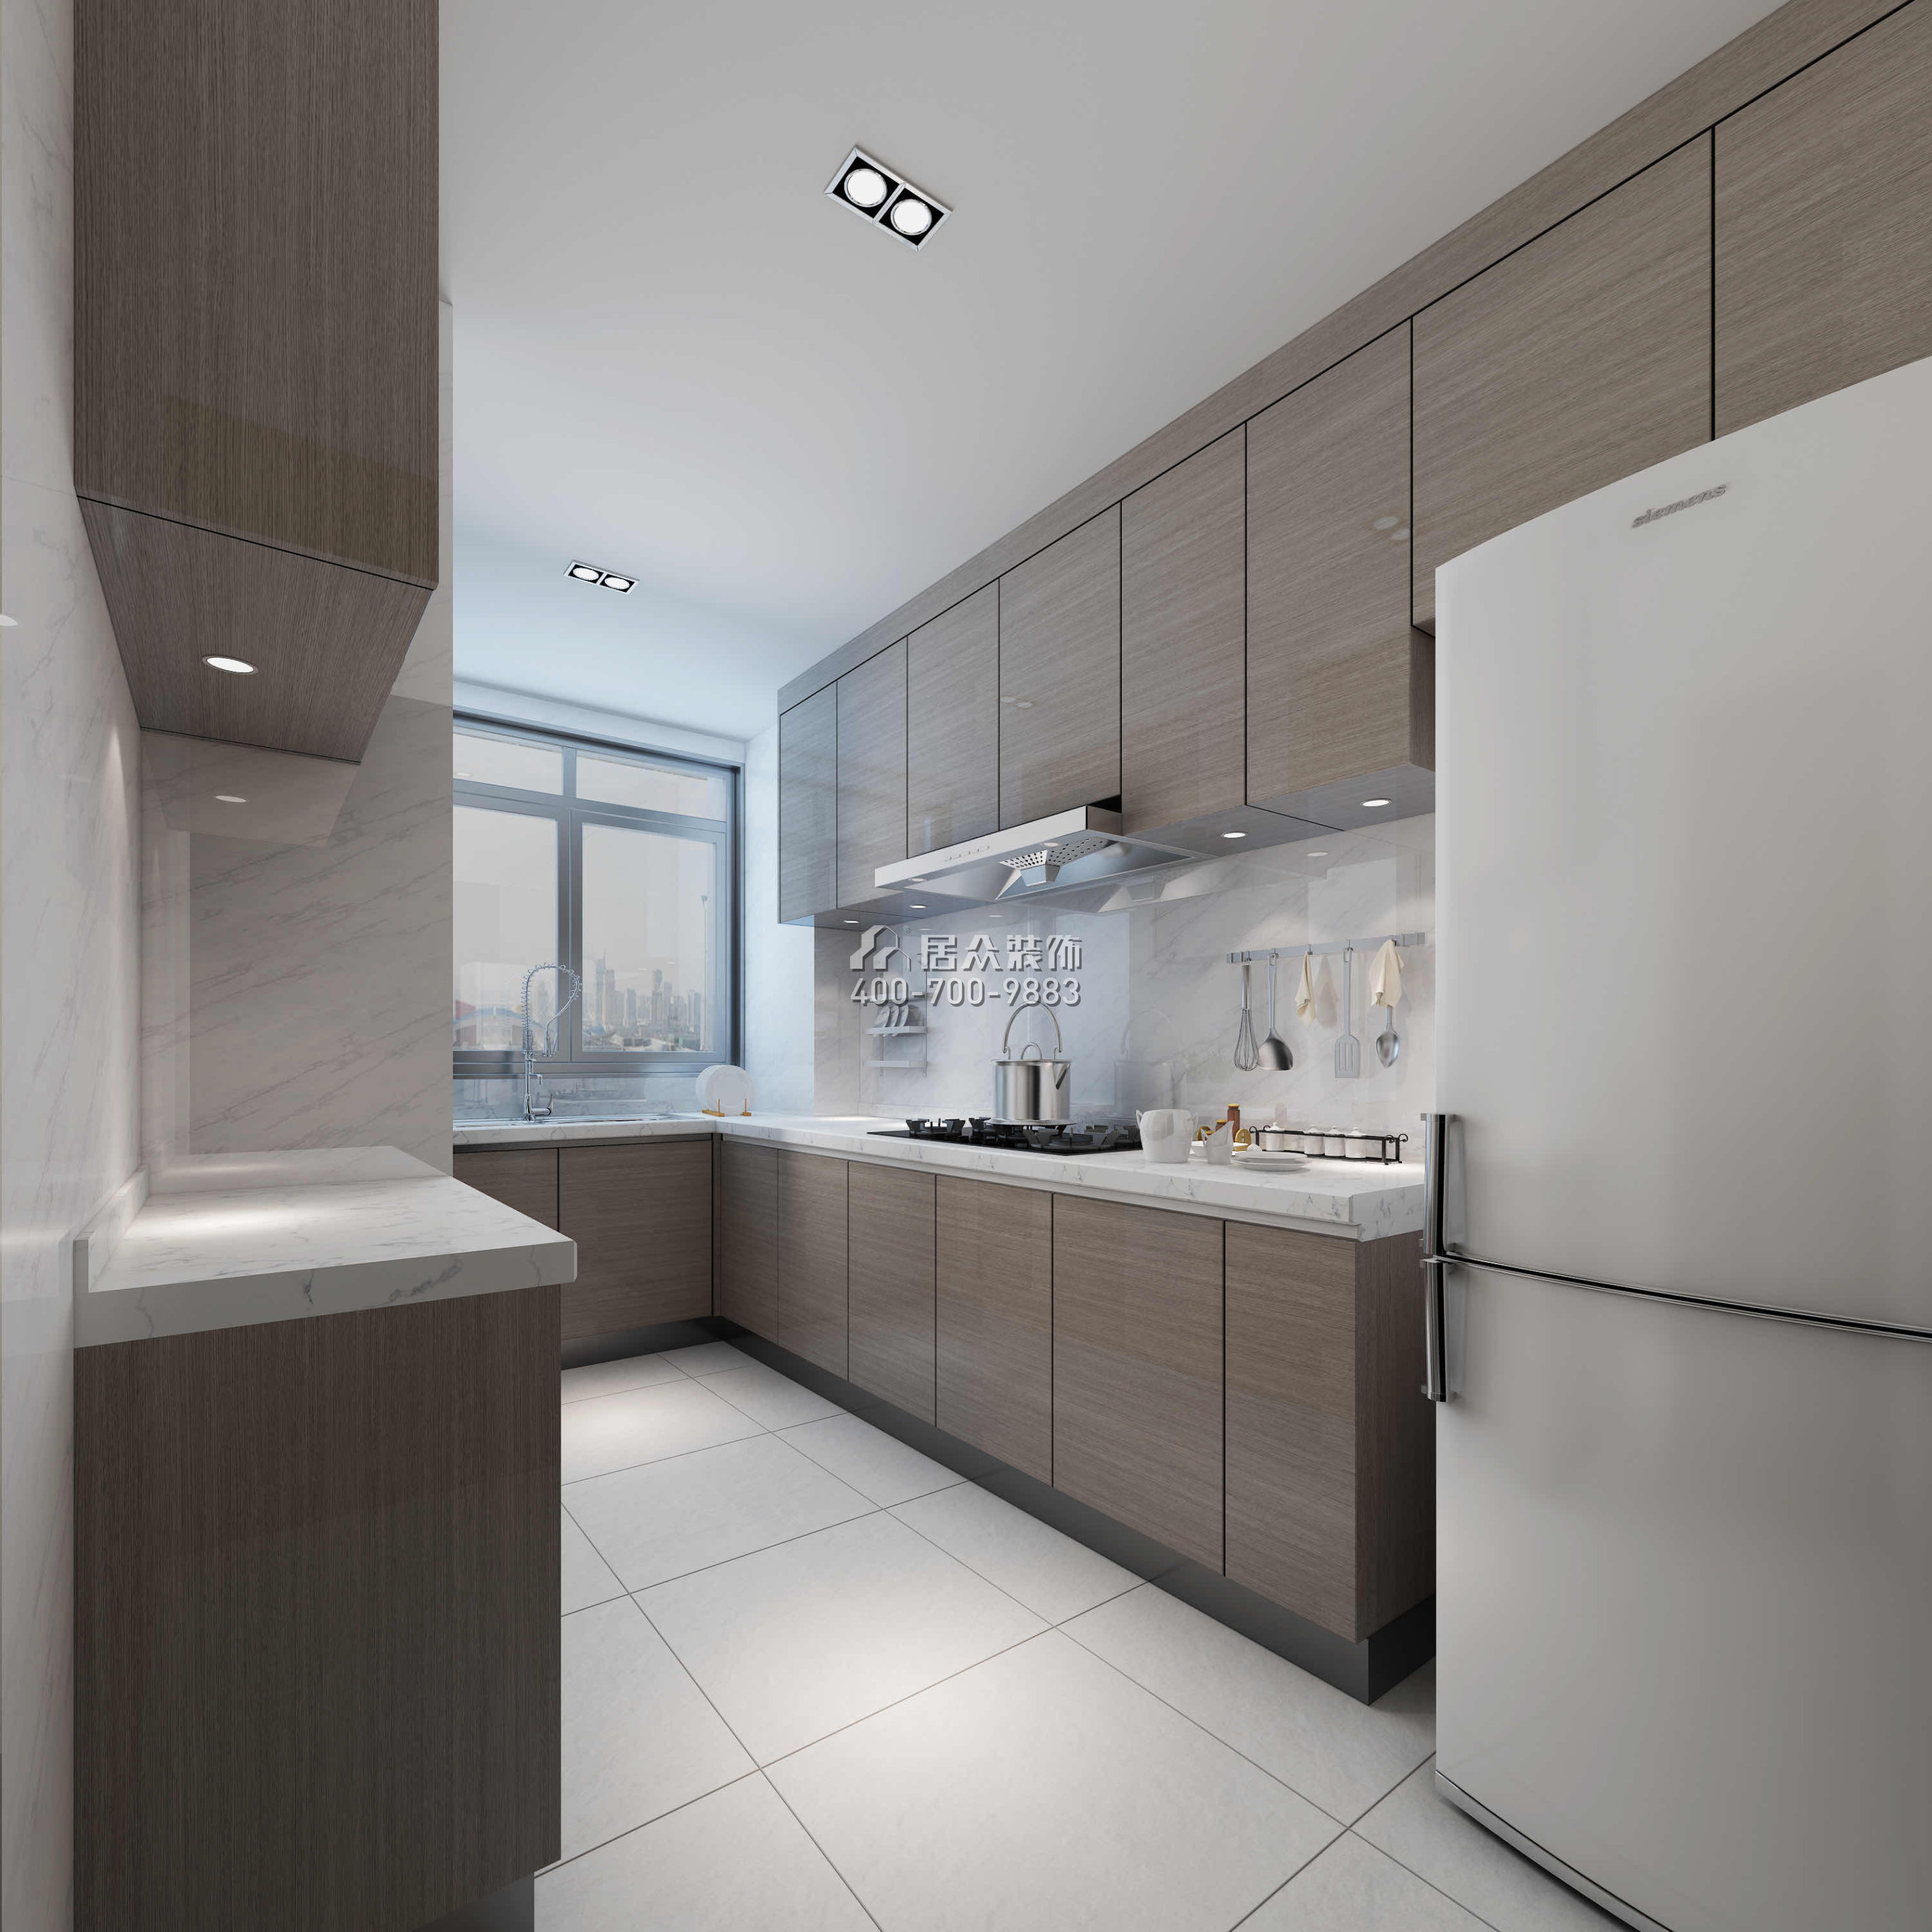 山语清晖一期178平方米现代简约风格平层户型厨房装修效果图